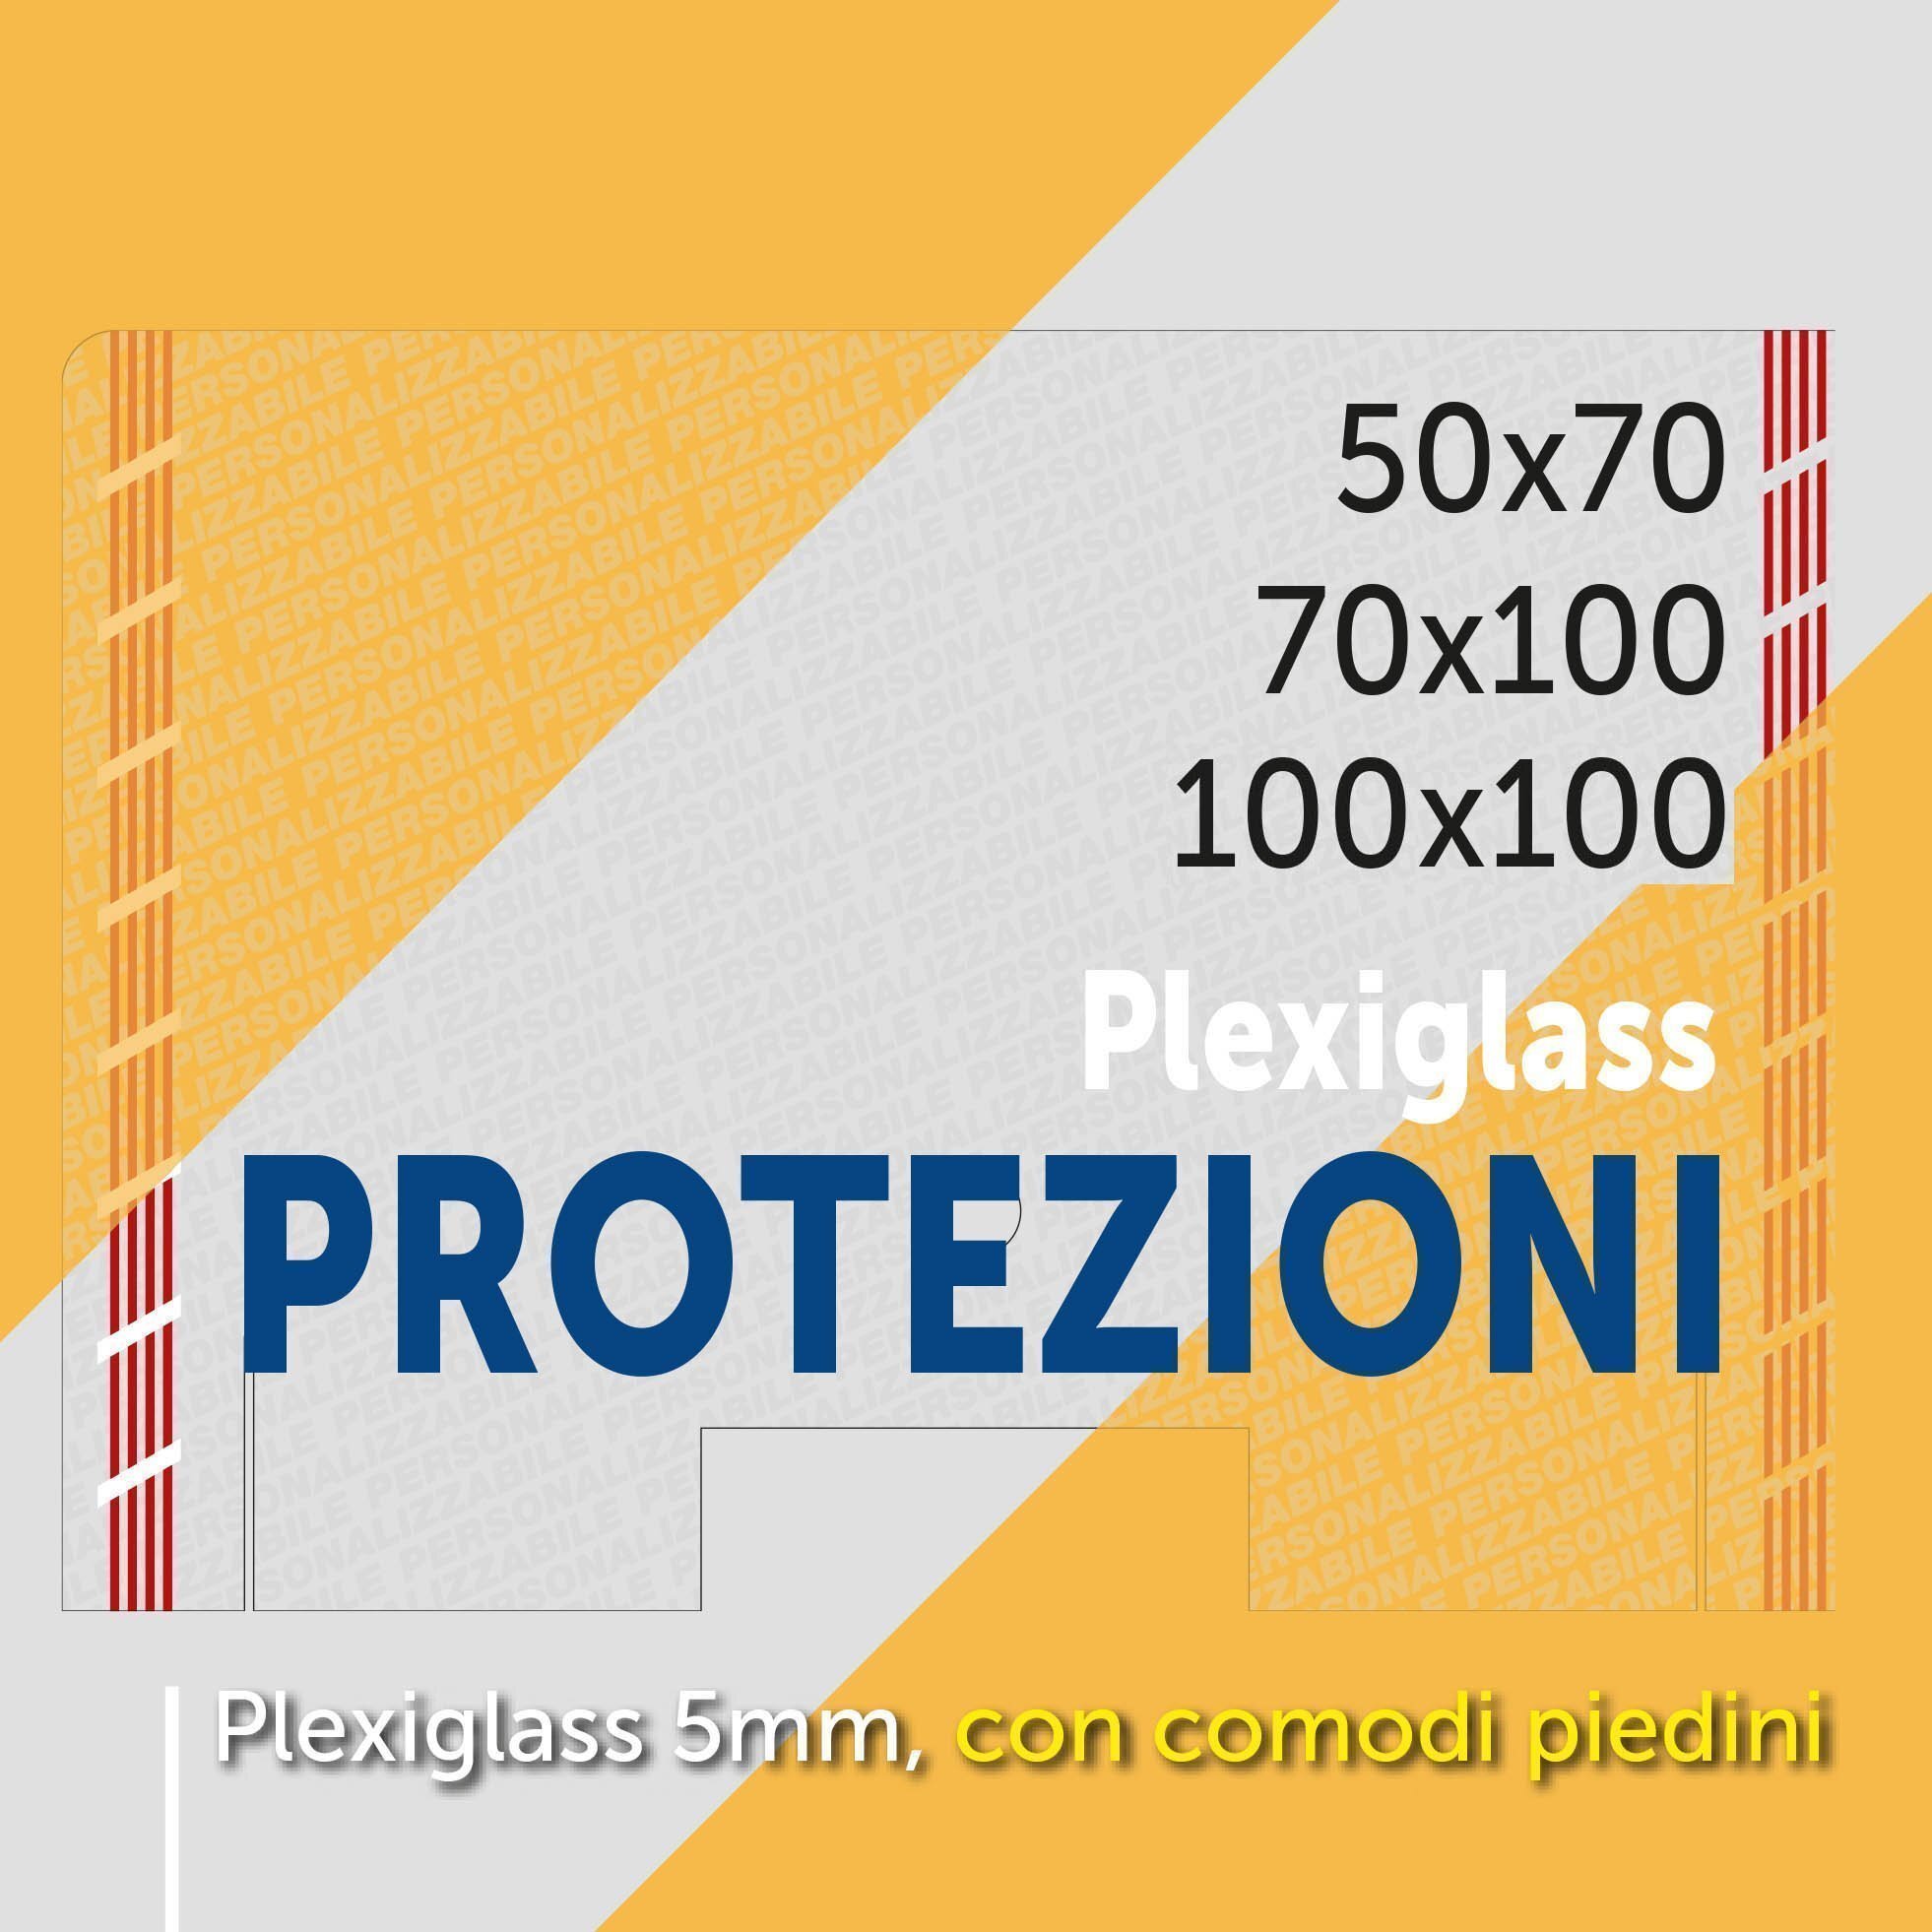 Protezioni per banchi in plexyglass